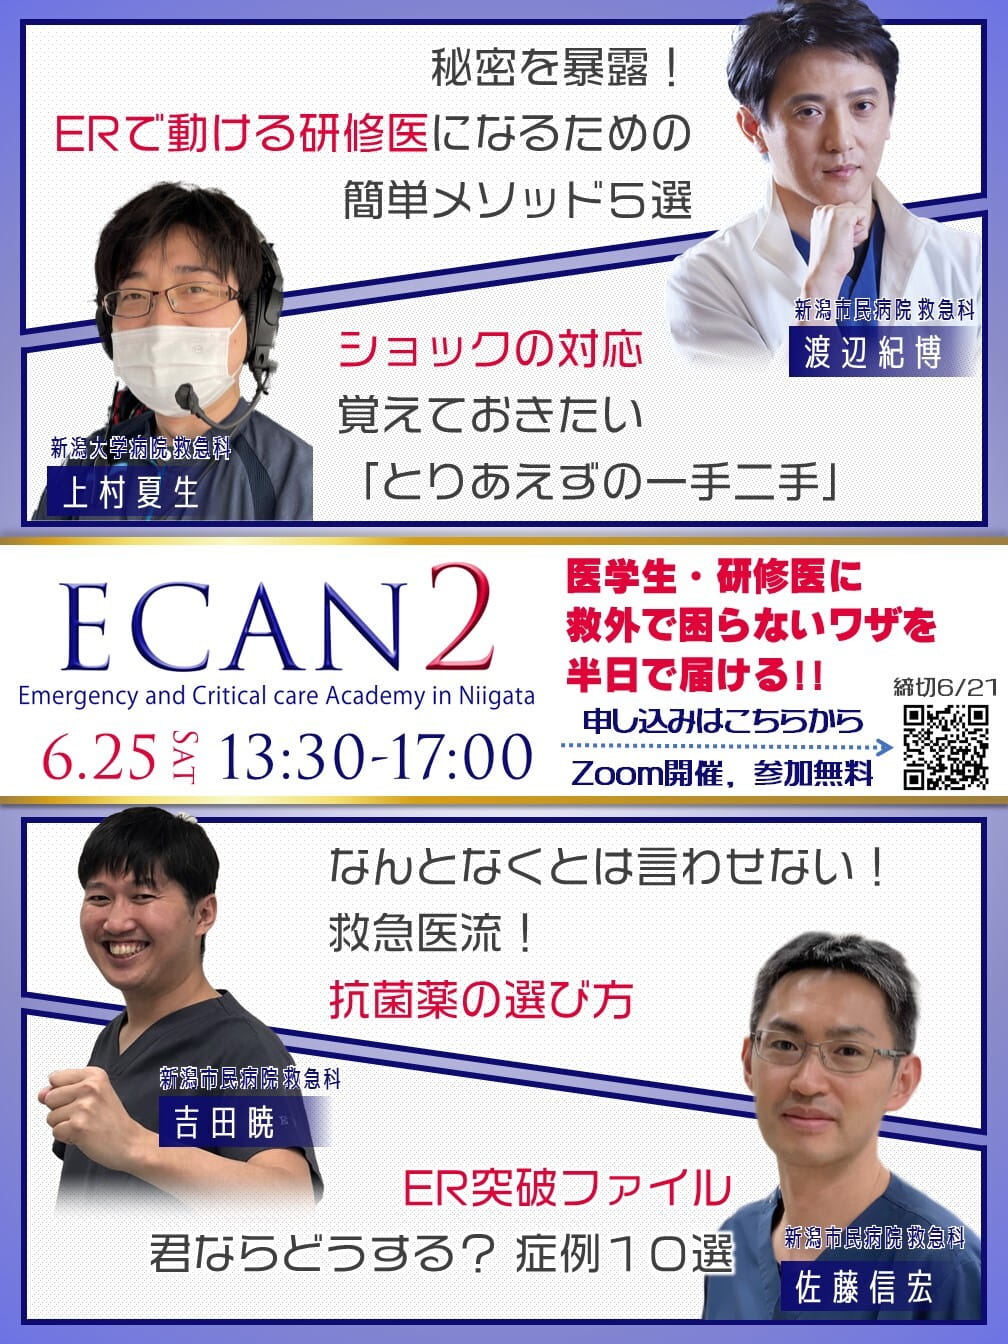 ECAN – 研修医向け救急勉強会 –